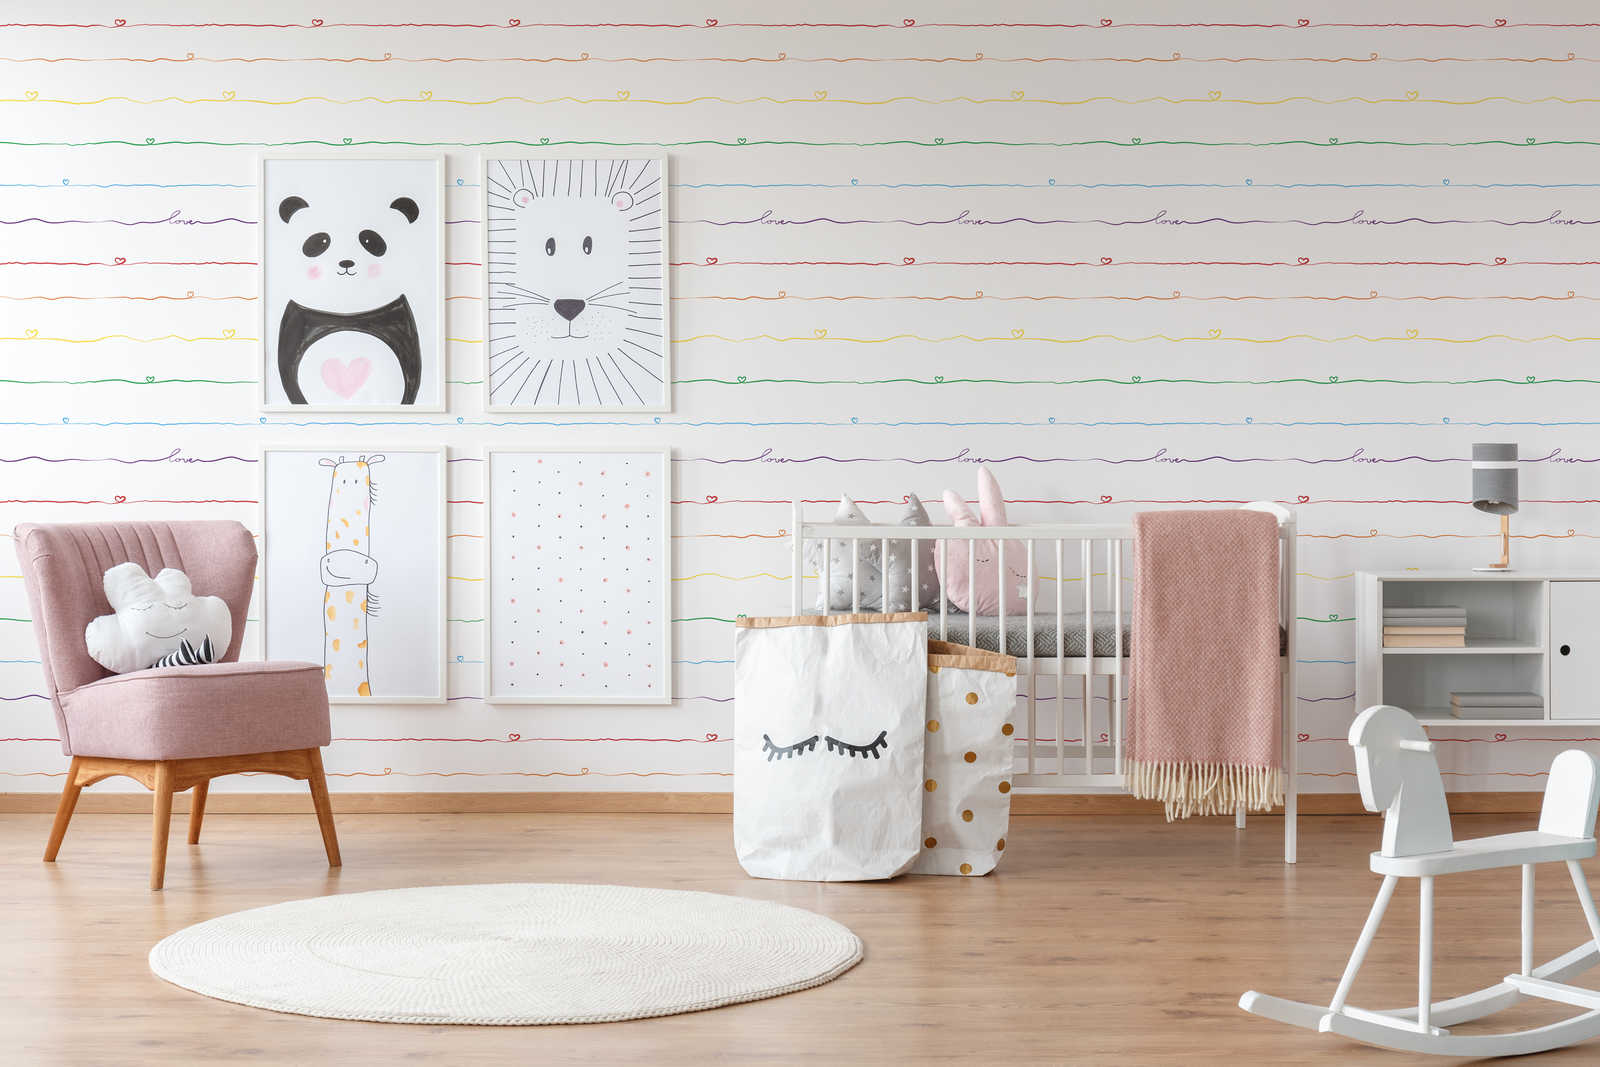             Papier peint rayé pour chambre d'enfant avec coeur - multicolore, blanc, rouge
        